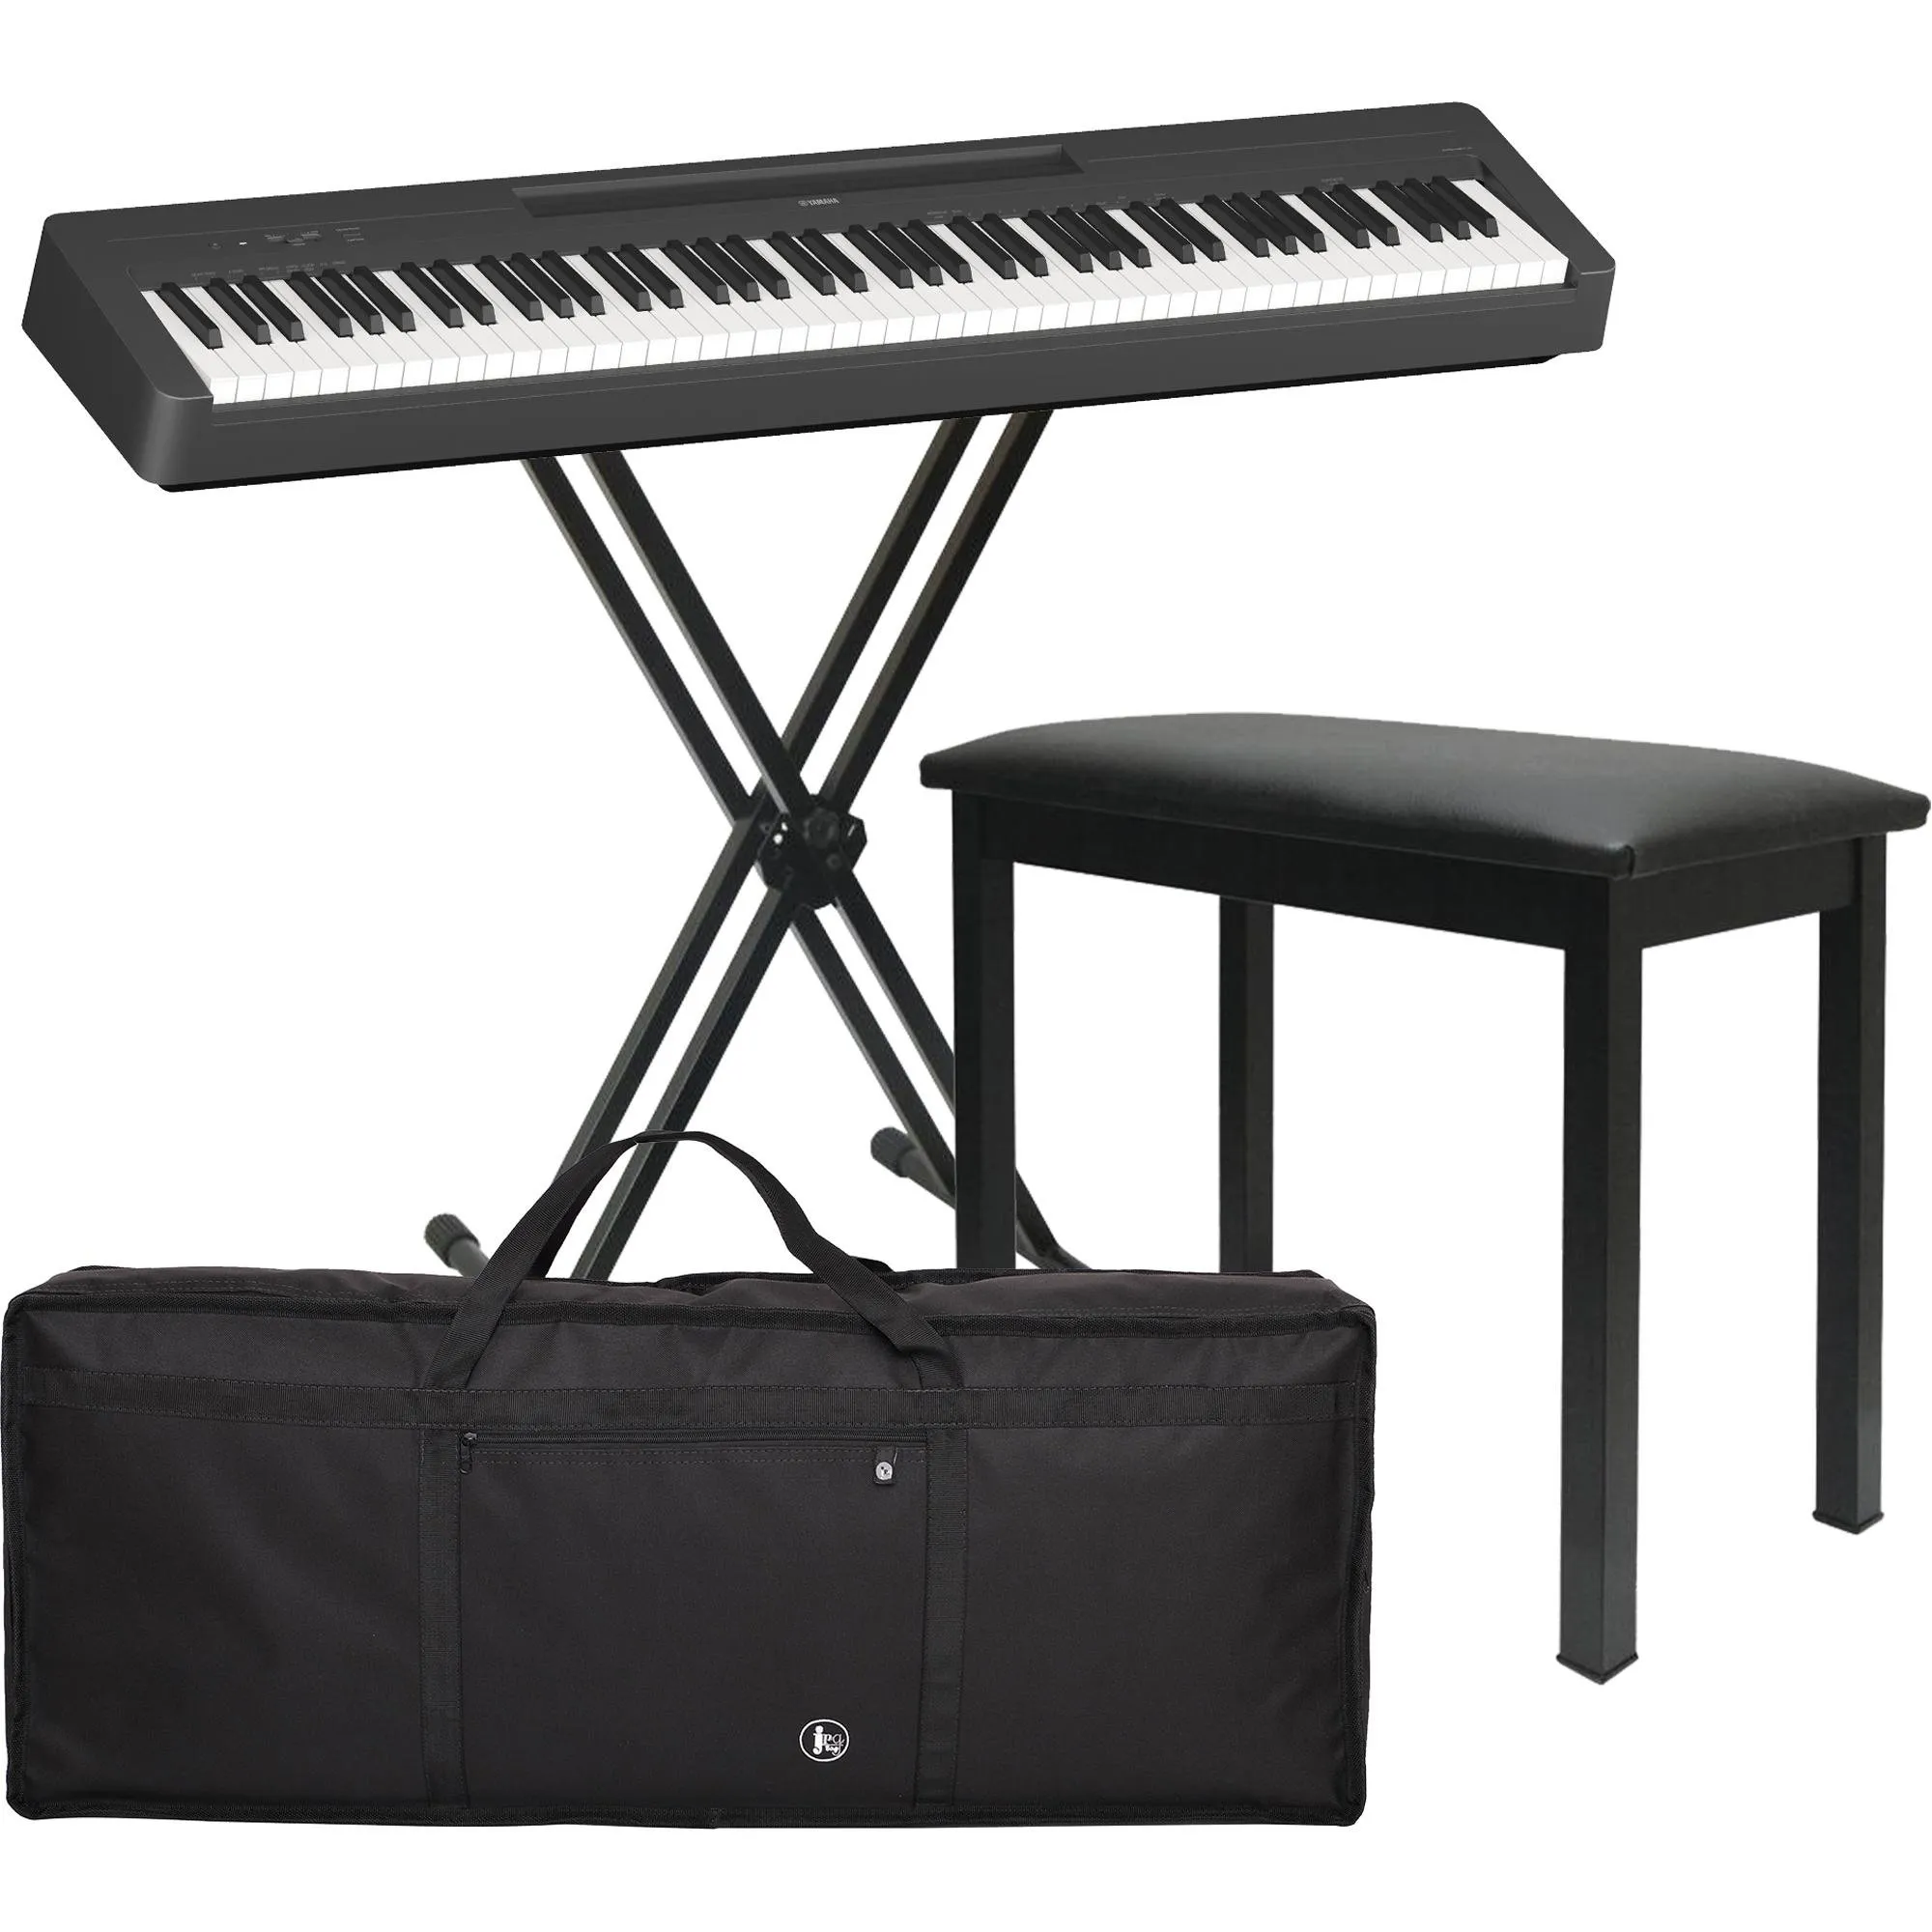 Kit Piano Yamaha P145 + Acessórios + Suporte por 4.265,00 à vista no boleto/pix ou parcele em até 12x sem juros. Compre na loja Mundomax!